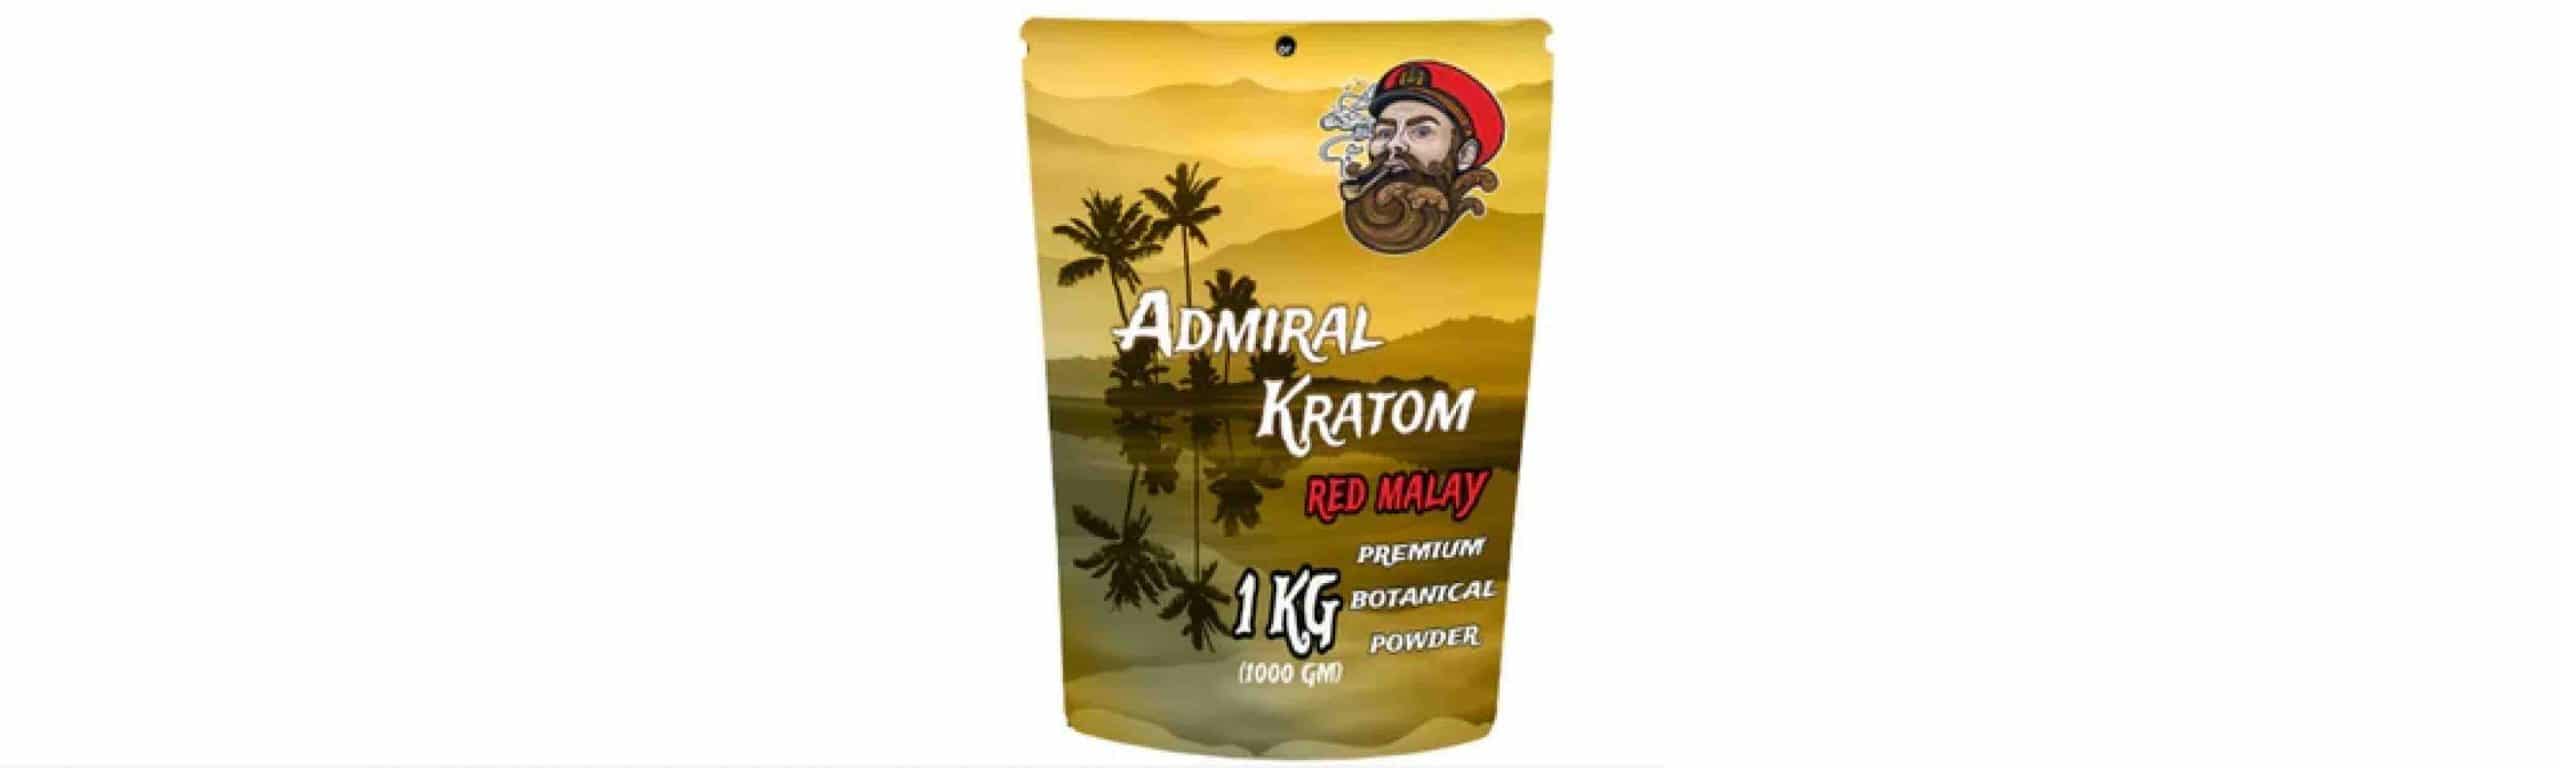 Admiral Kratom Vendor Review